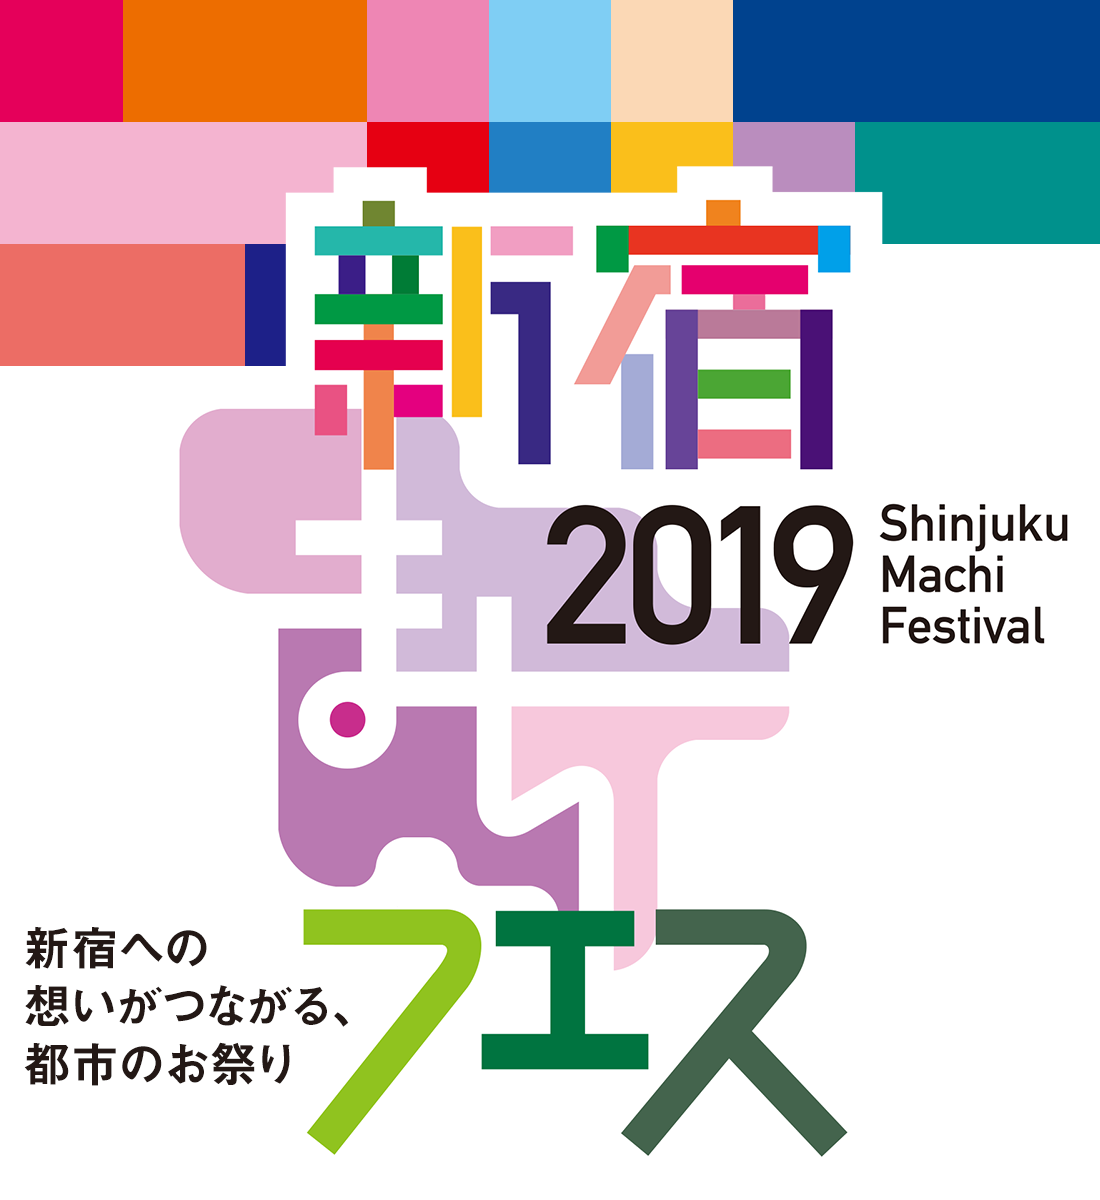 到新宿的想法连通的都市的节日新宿machi节日2019